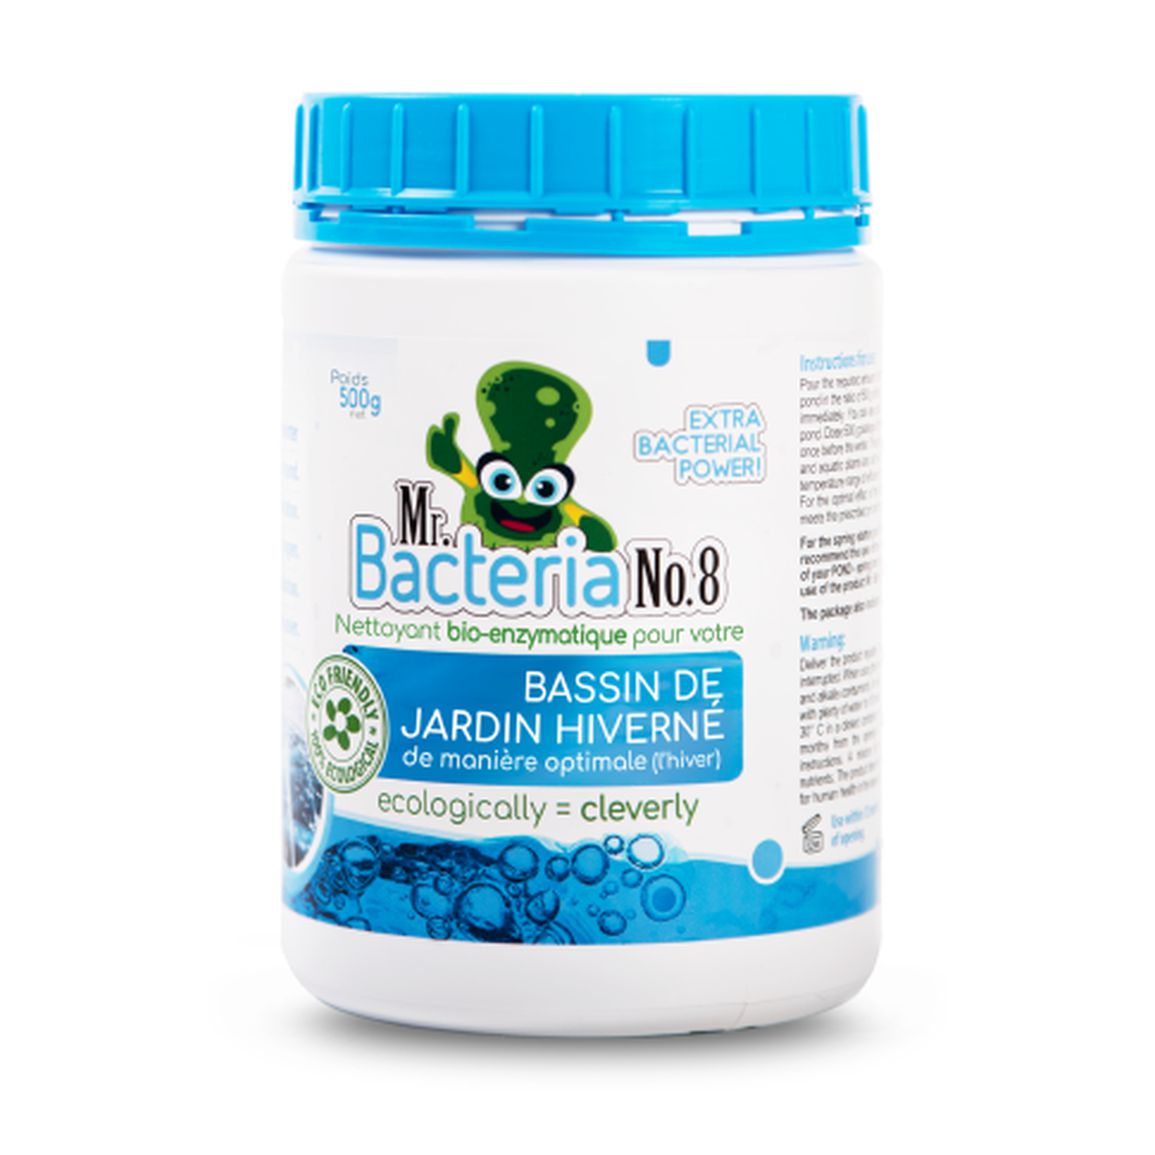 Nettoyant bio-enzymatique pour votre BASSIN DE JARDIN HIVERNÉ de manière optimale (l’hiver) 500g (Bactérie pour bassin)